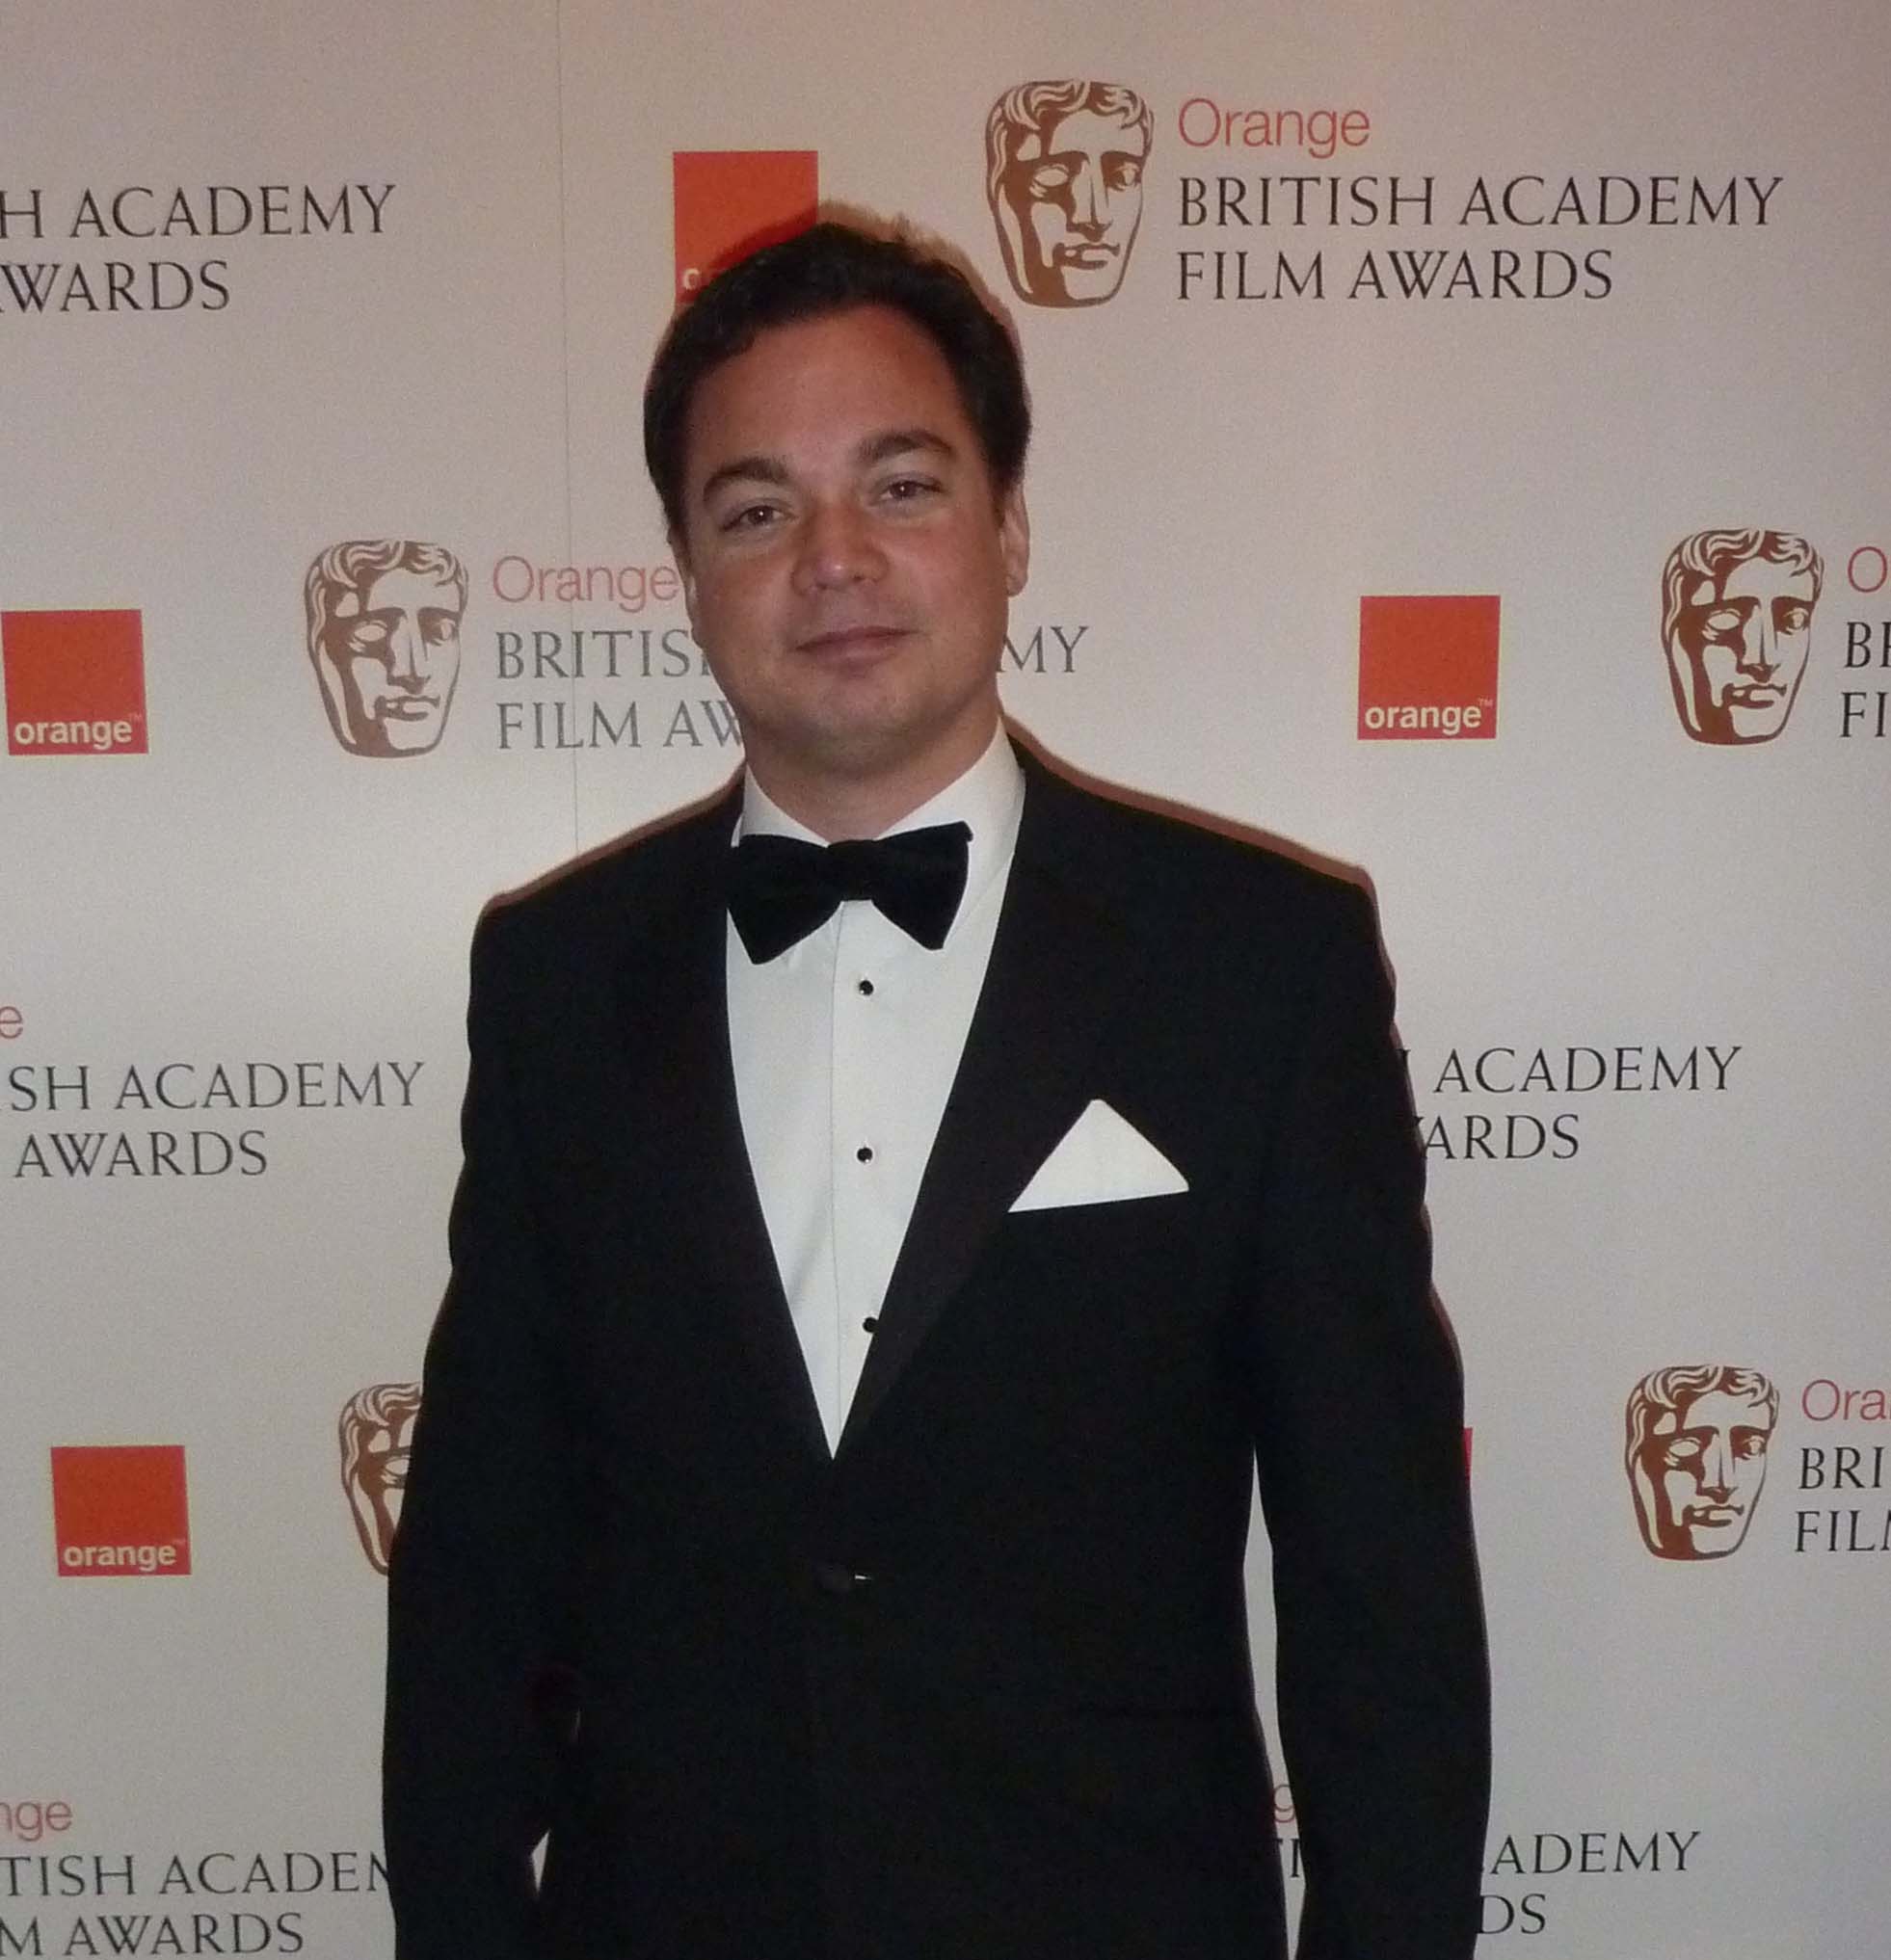 At Bafta Film Awards 2012